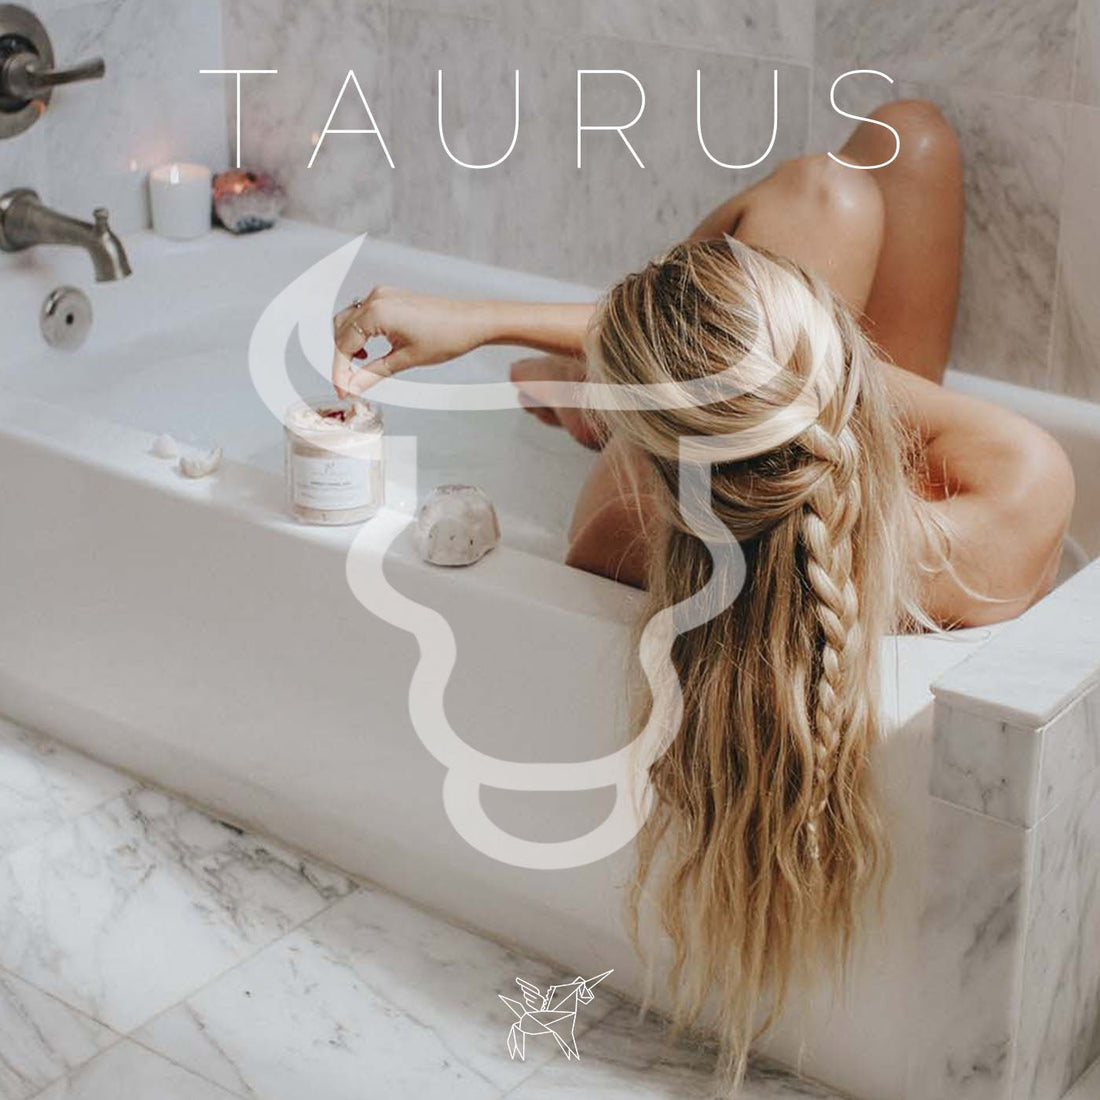 Taurus Season – Being - Chasin' Unicorns